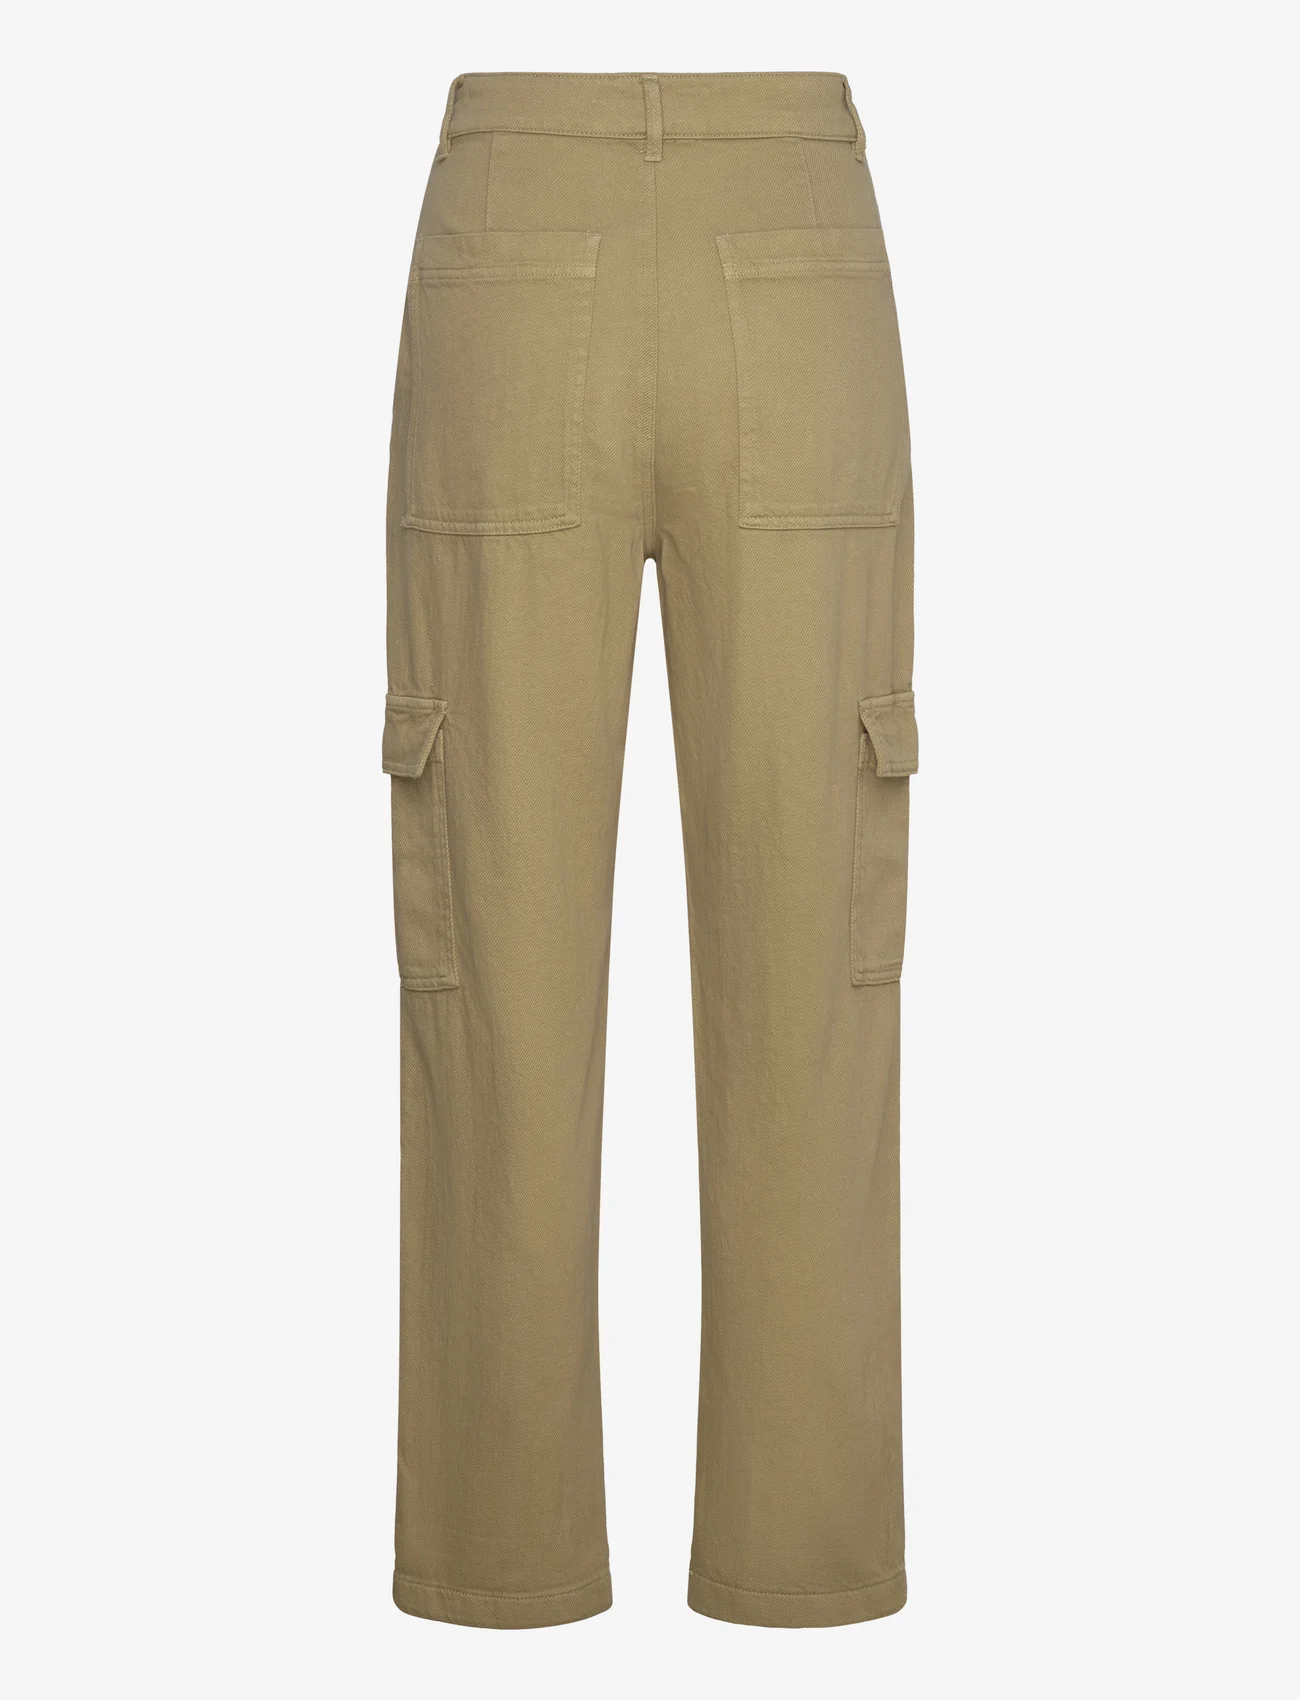 Lindex - Trouser Suzette patch pocket - cargo pants - green - 1